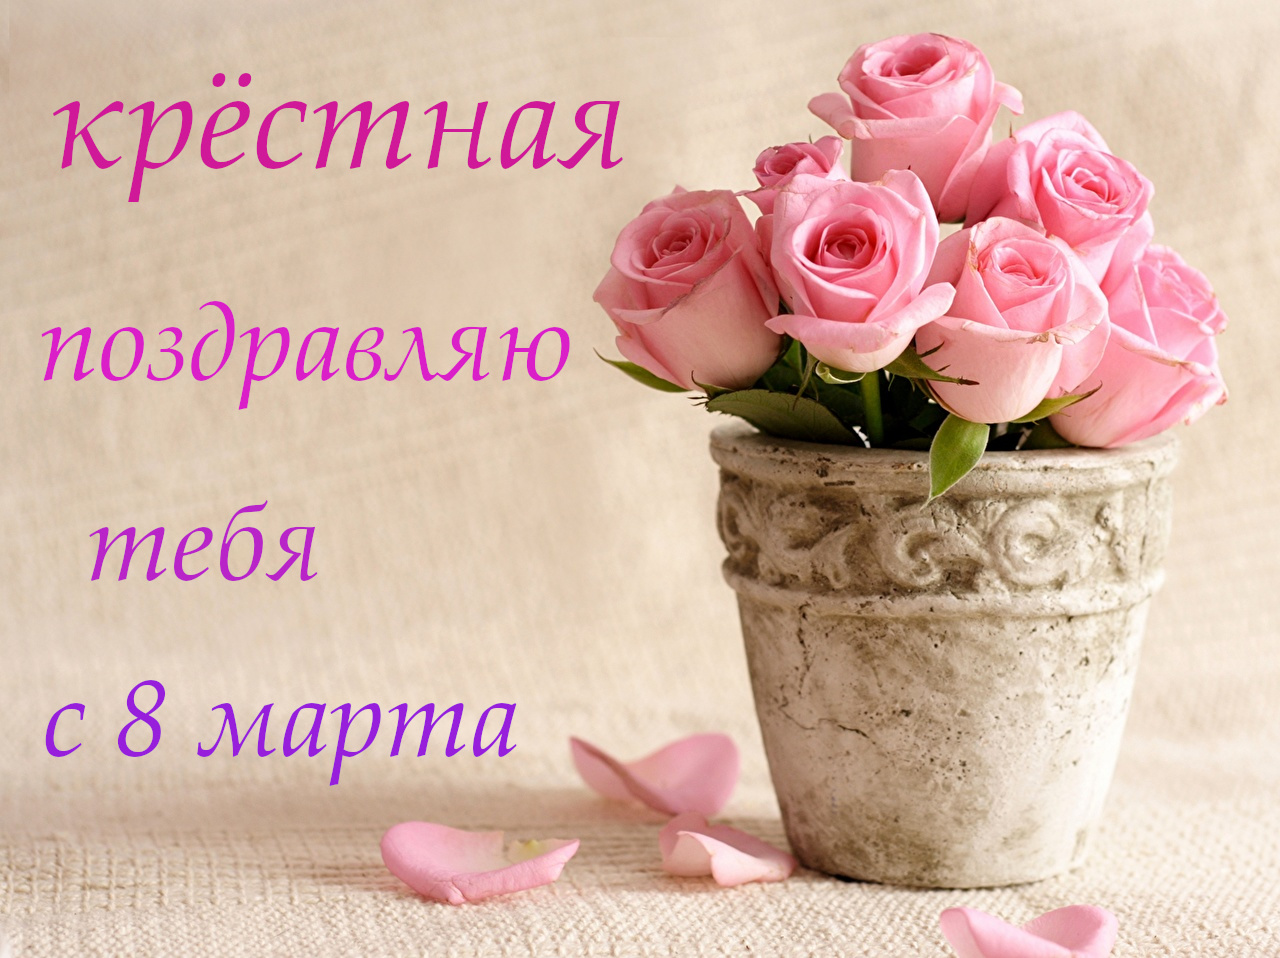 8 марта международный женский день ,красивая открытка для крёстной. 8 марта международный женский день,красивая открытка с поздровлением 8 марта для крёстной ,нежная , с красивыми цветами в горшочке, цифра восемь на картинке,розовые цветы.